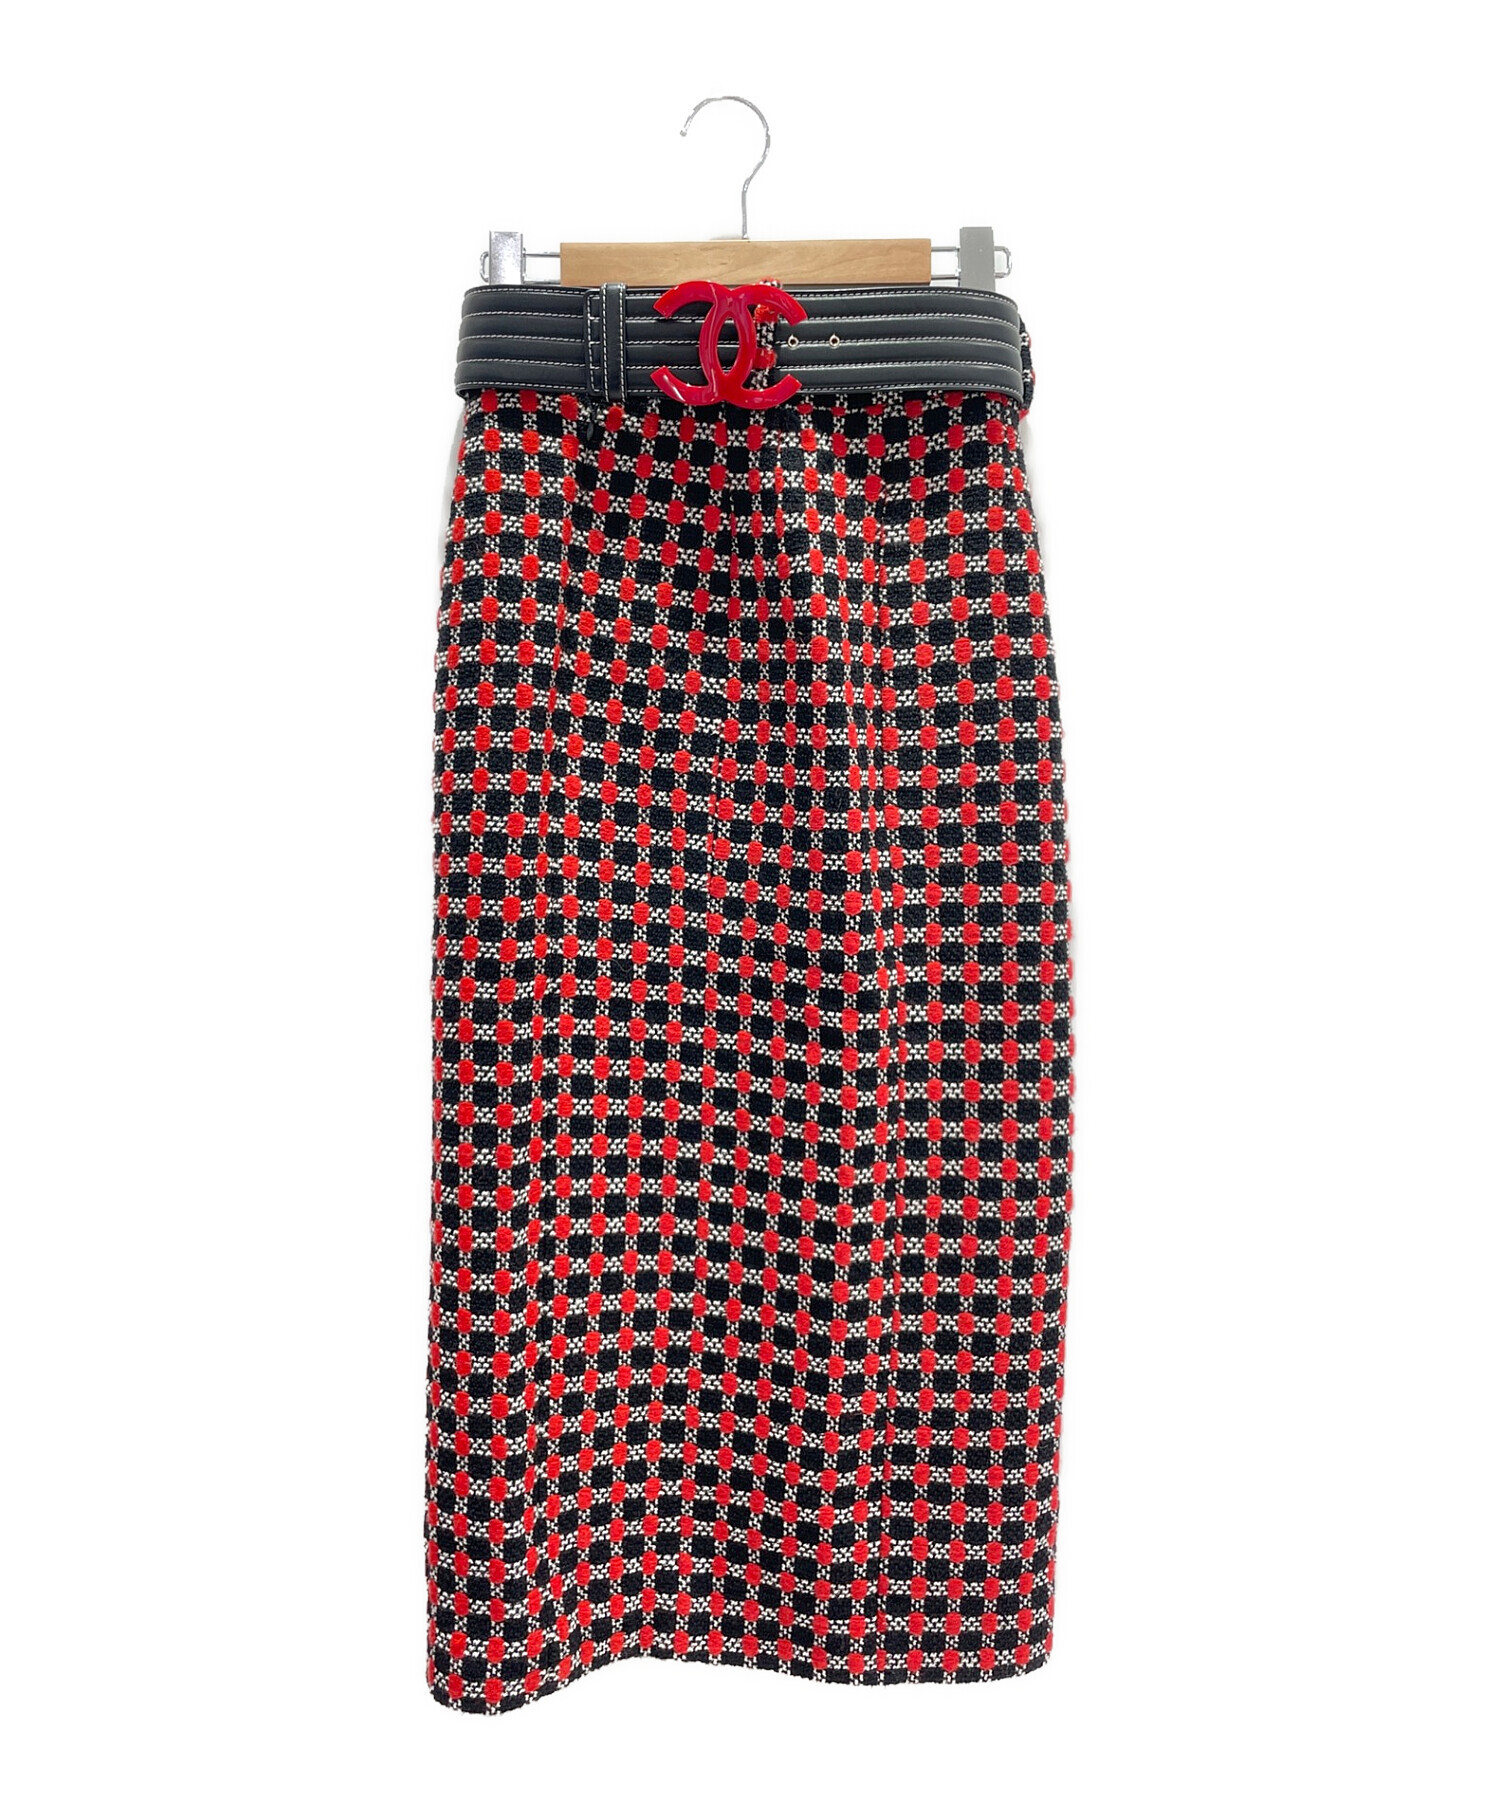 CHANEL ツイードスカート サイズ36平置きサイズ